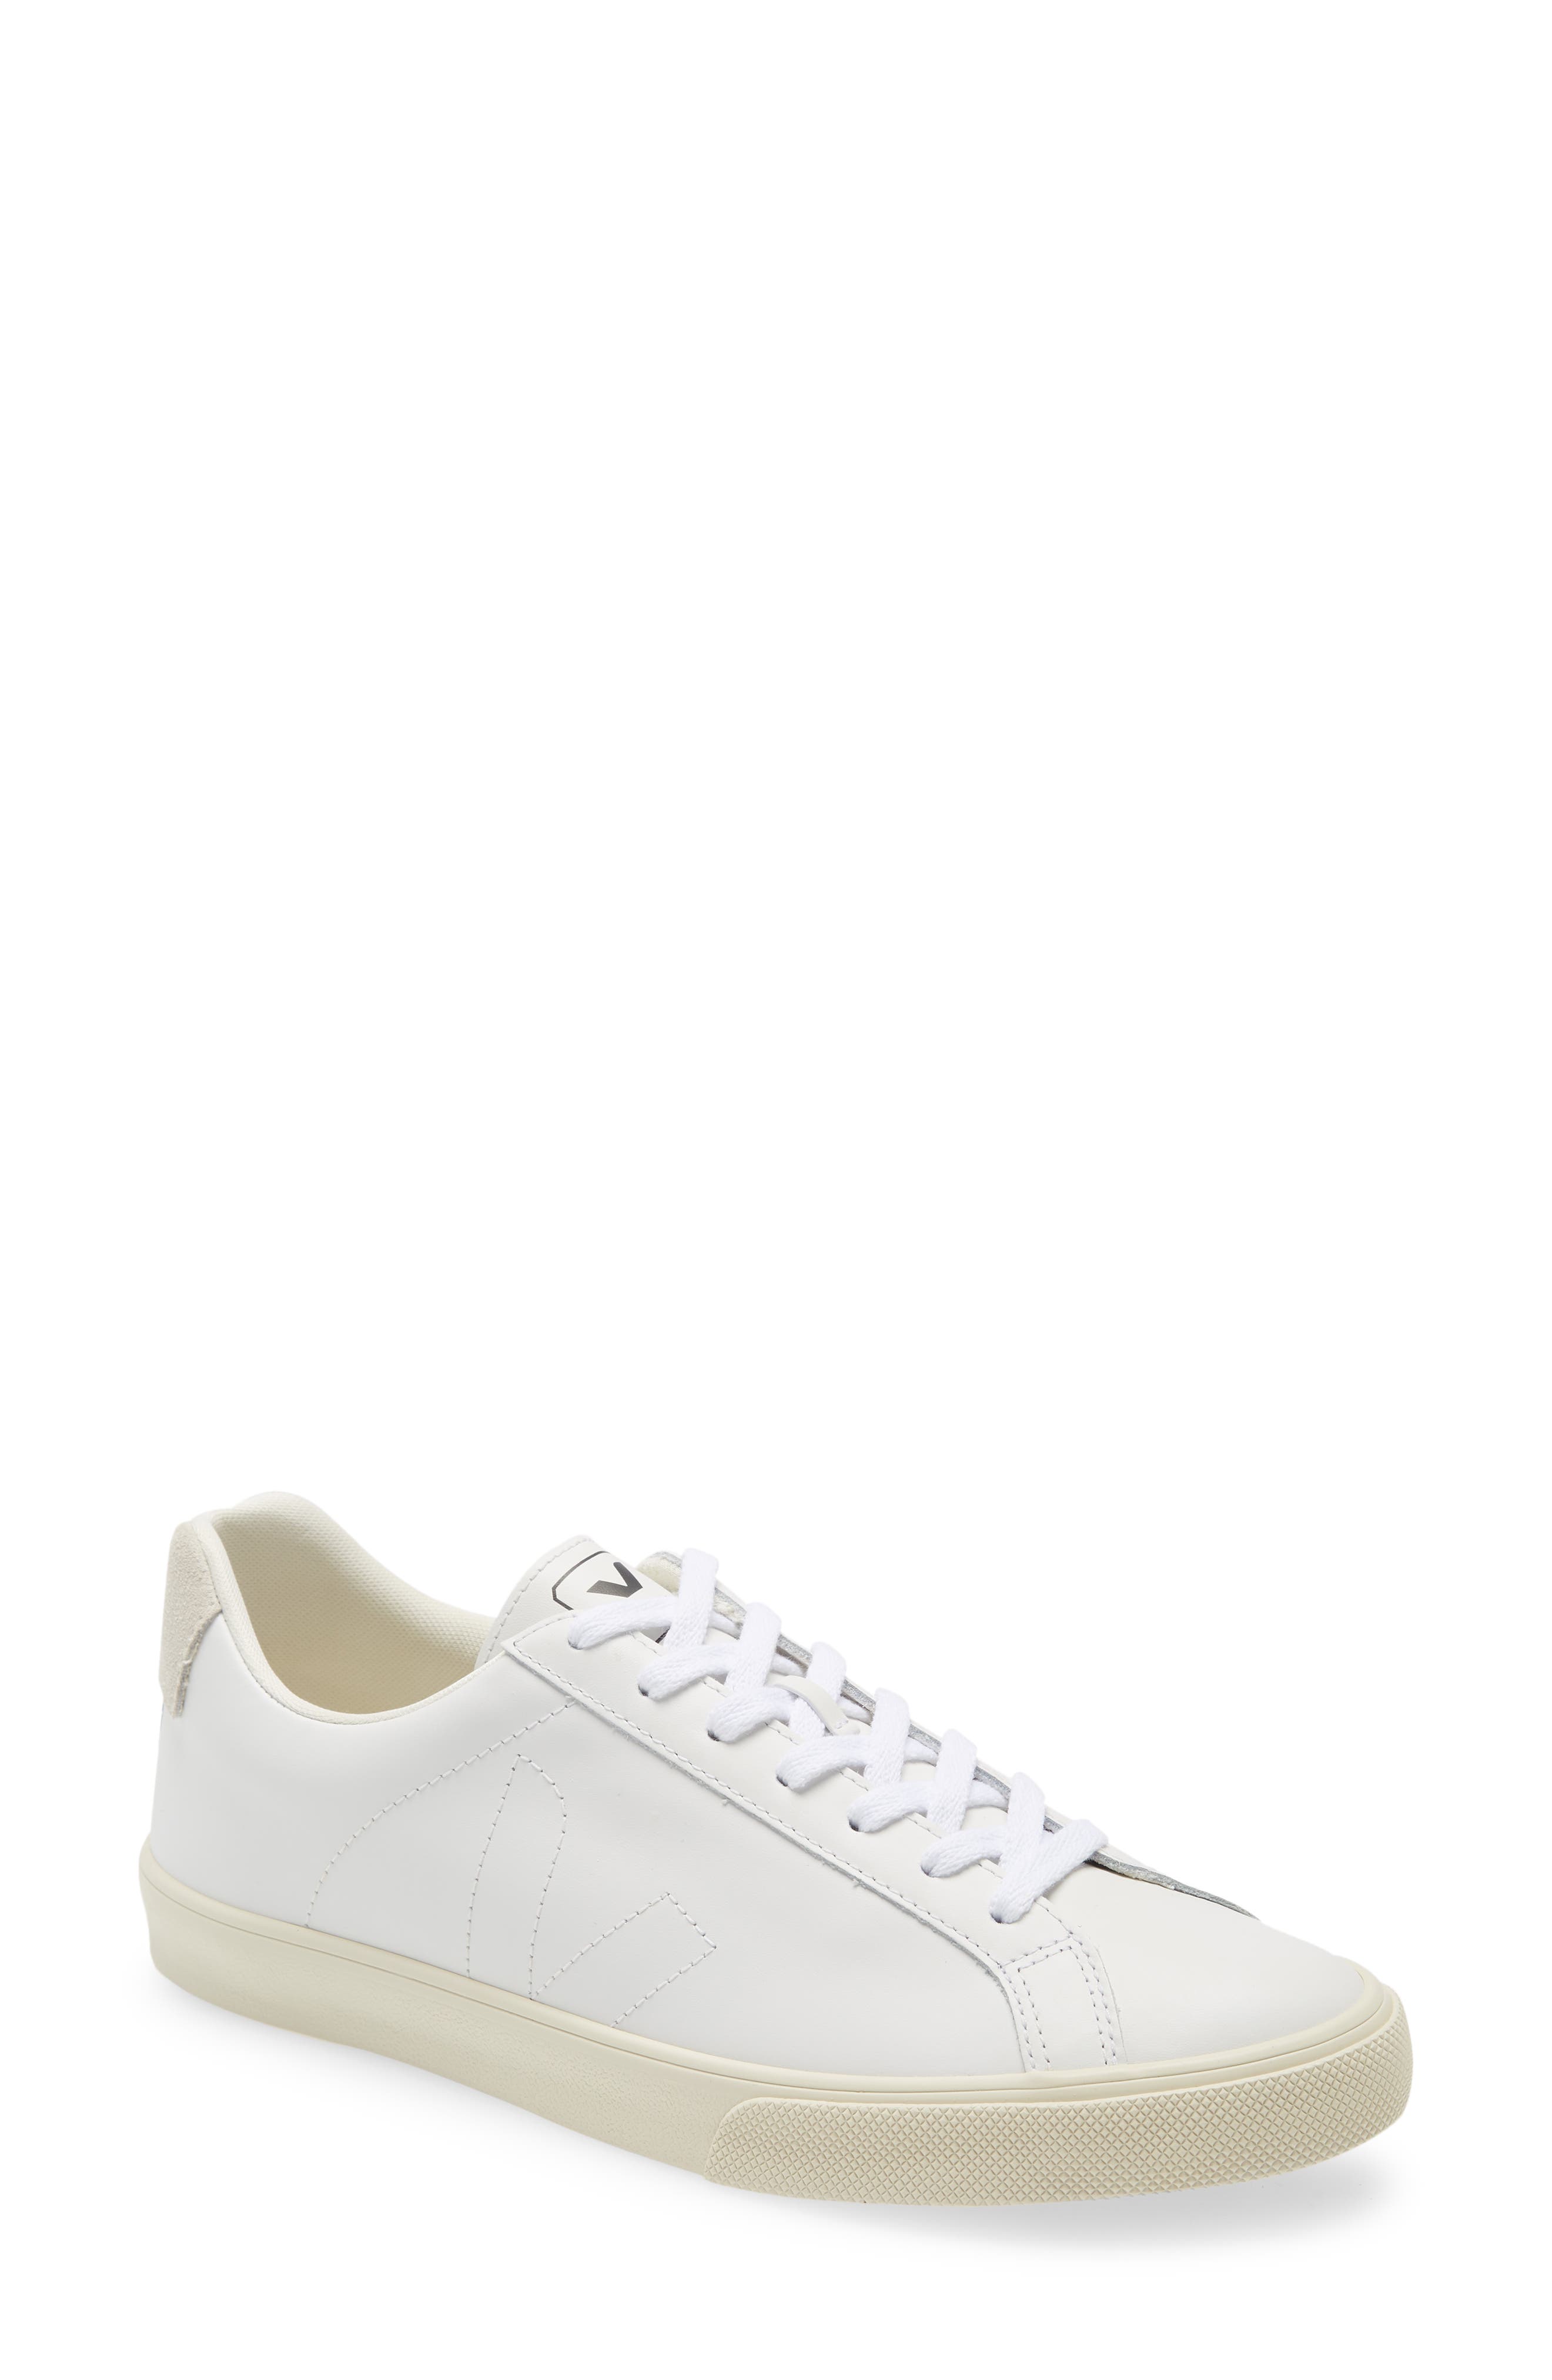 Veja Esplar Sneaker in Extra White Leather at Nordstrom